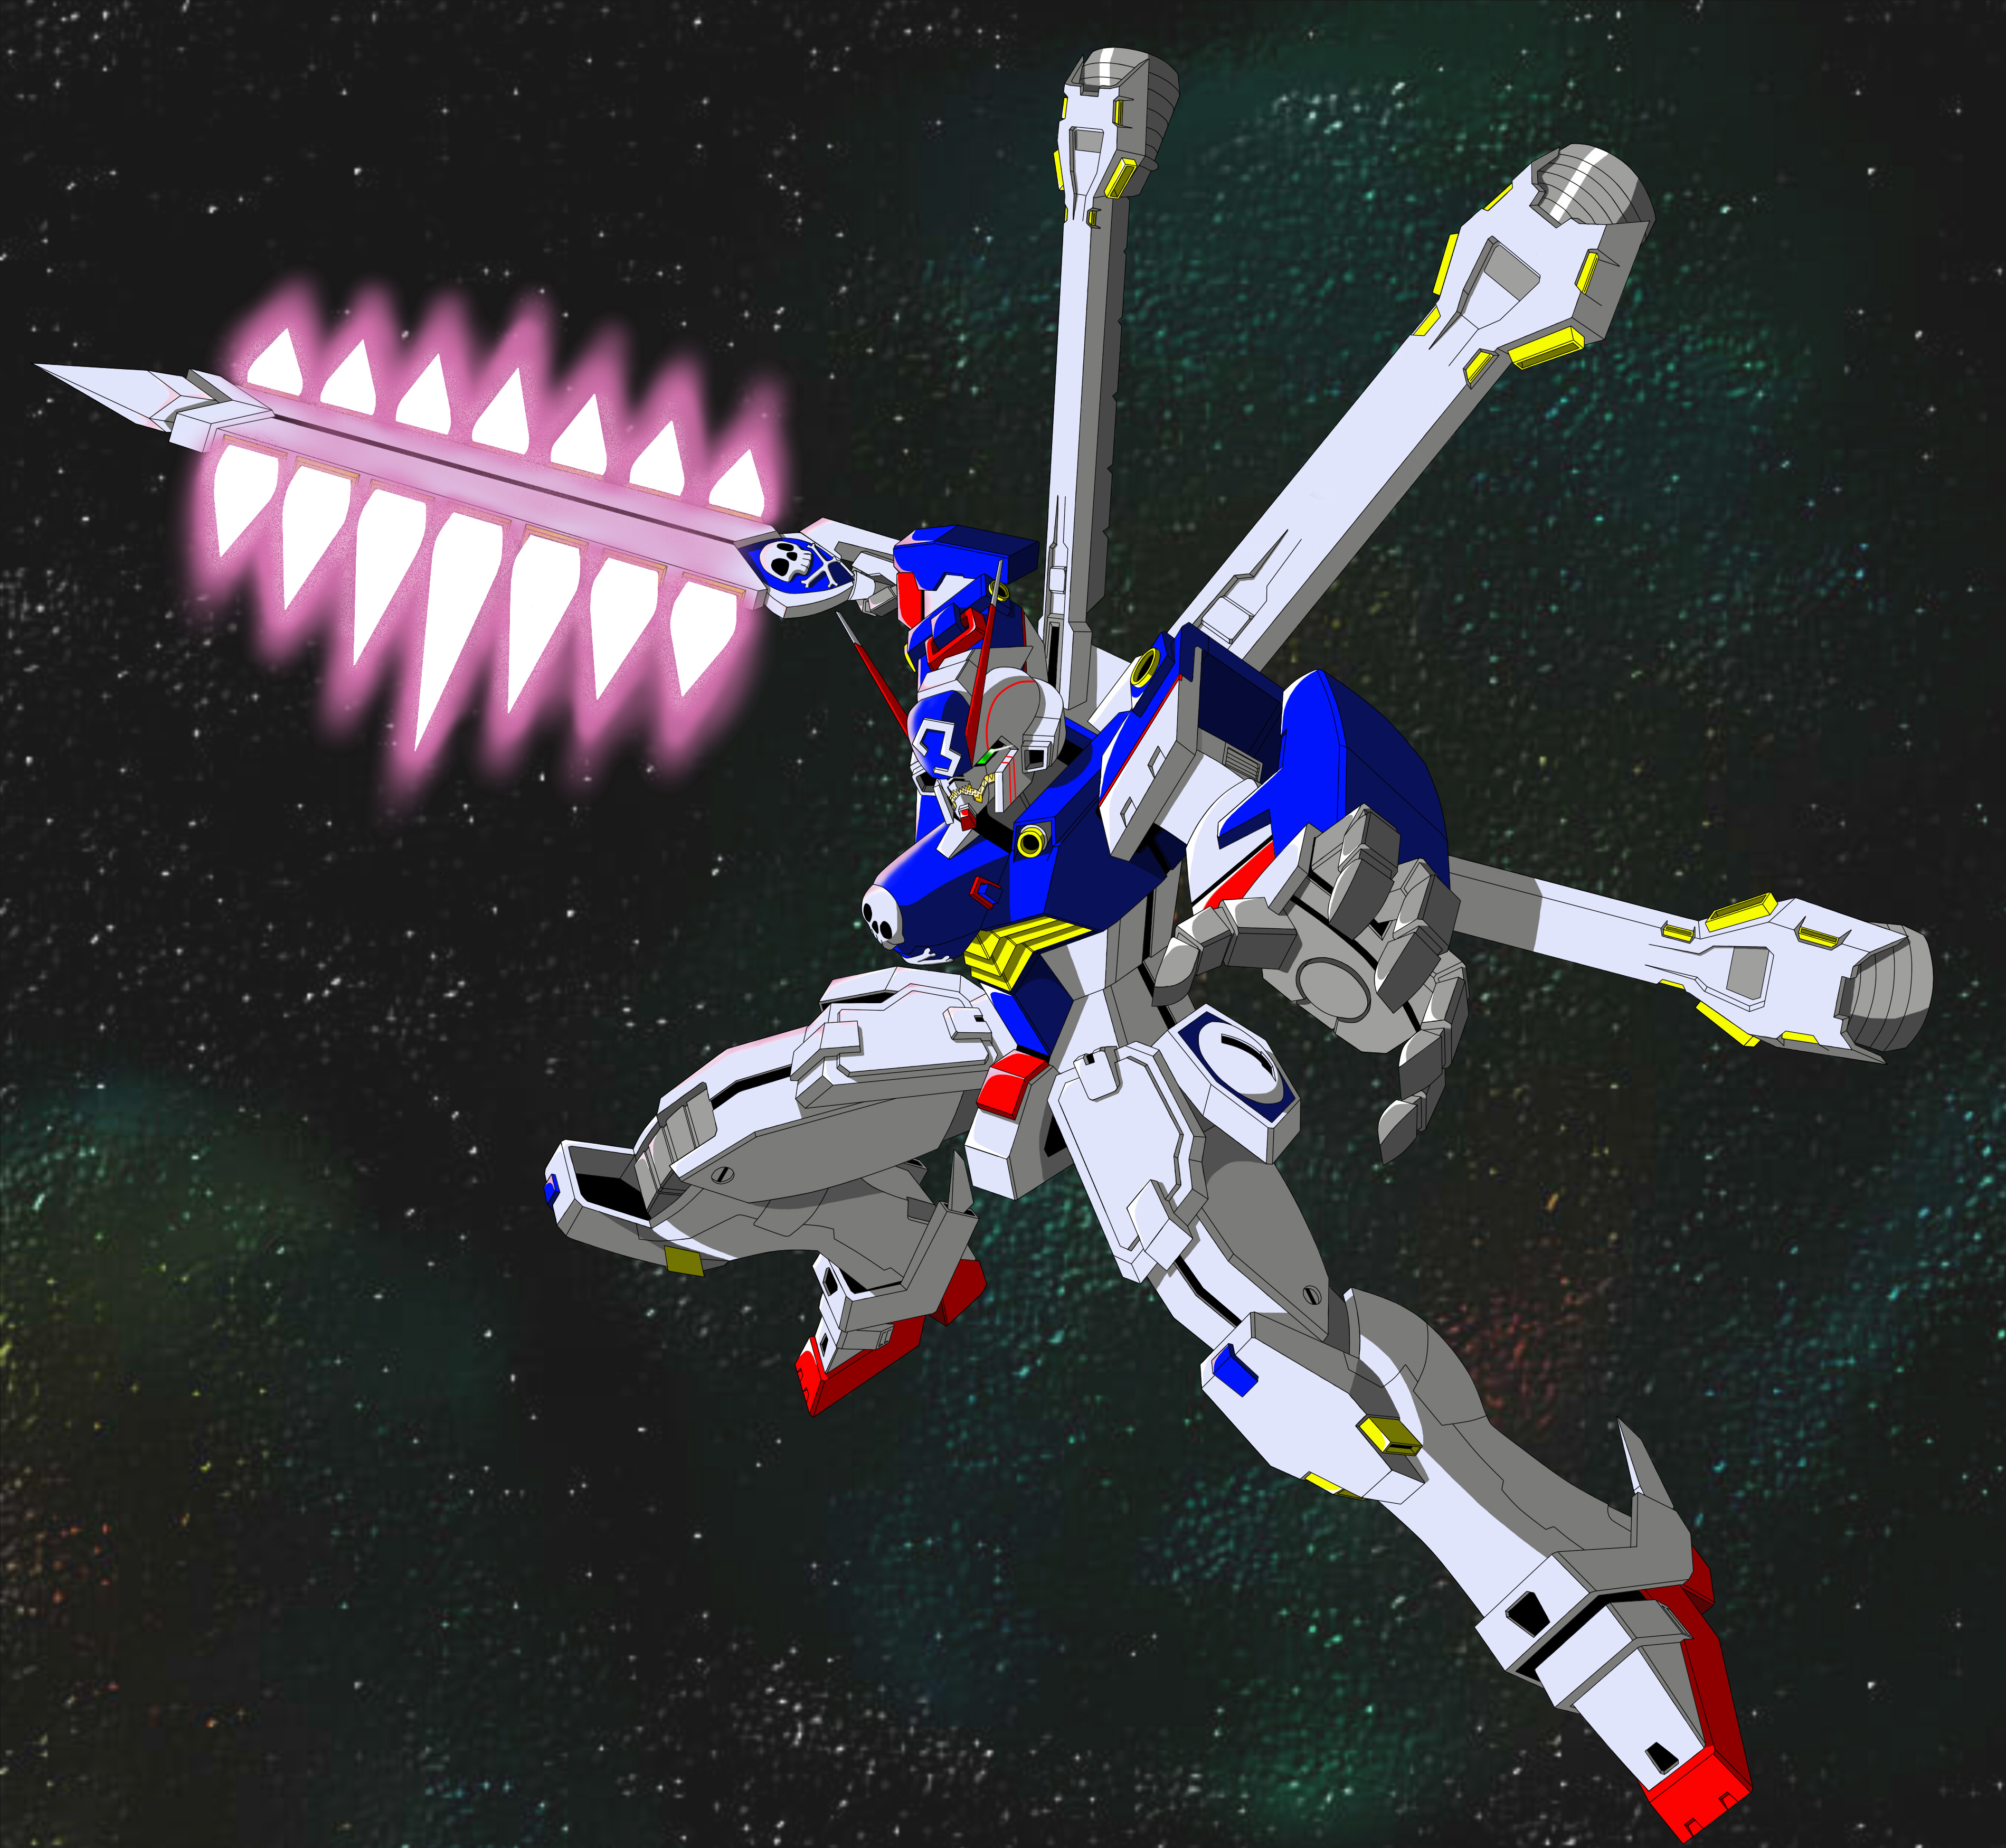 Anime Mechs Super Robot Taisen Artwork Digital Art Fan Art Crossbone Gundam X 3 Mobile Suit Crossbon 3800x3500